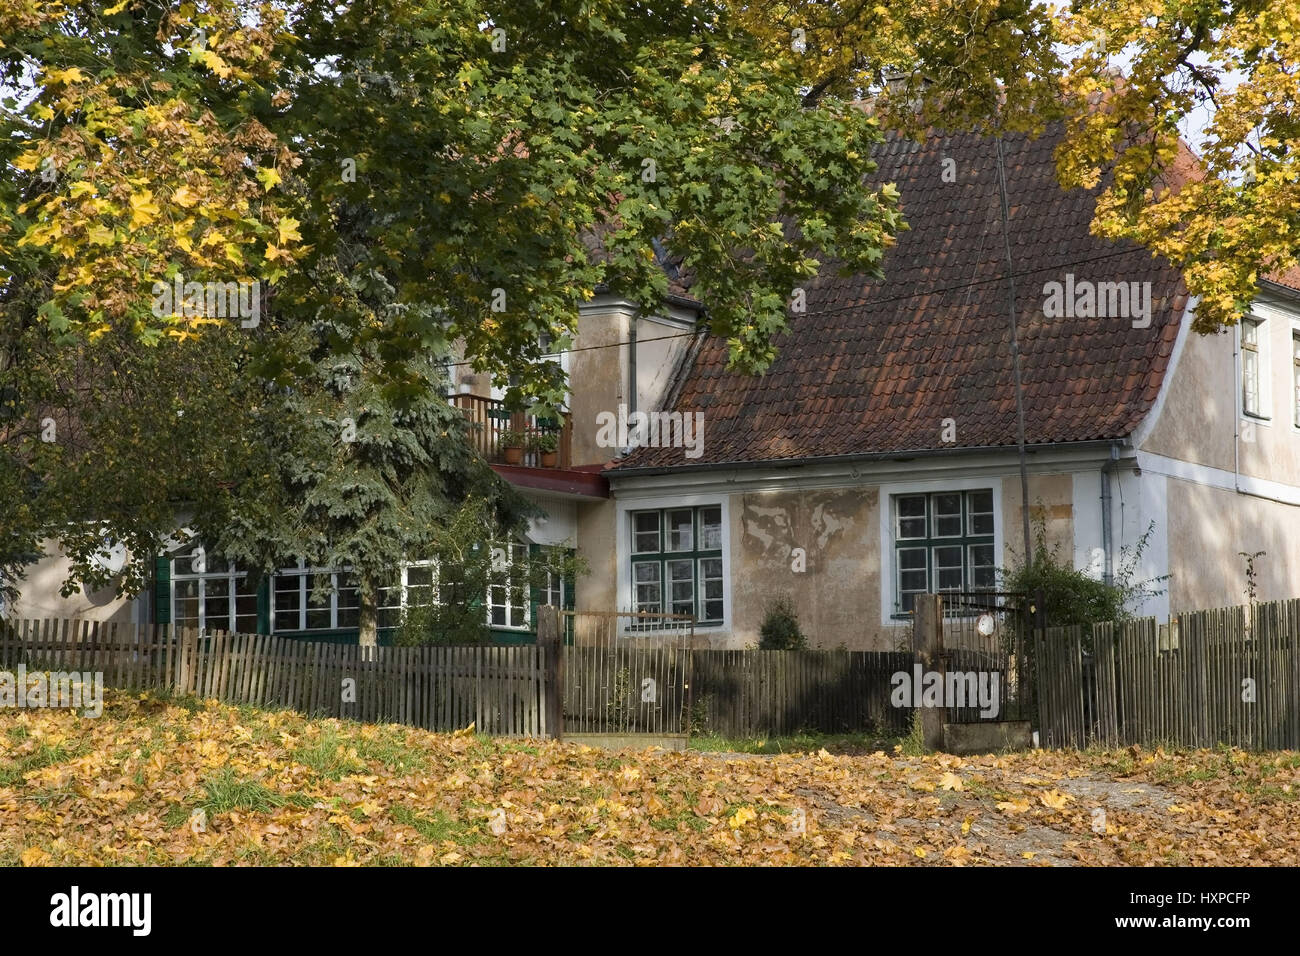 Masurisches Haus mit Herbstkich bunten Laubbäumen. Masuren Polen, Masurisches Haus Mit Herbstkich Verfärbte Laubbäume.Masuren Polen Stockfoto